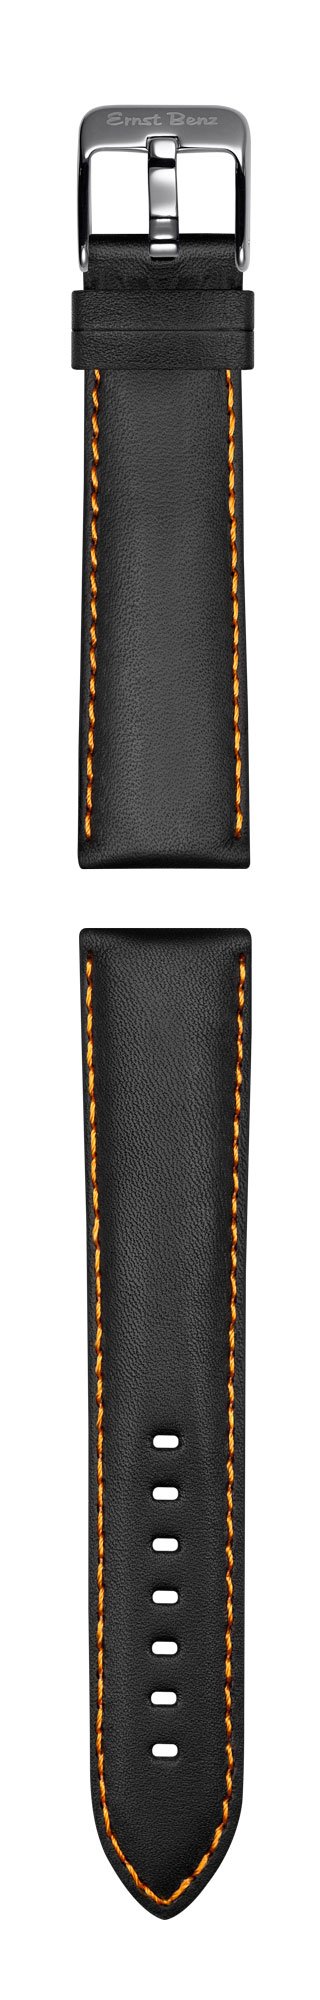 Ernst Benz Chronosport Orange Numerals Black Leather Band 47mm Men's Automatic Watch GC10216